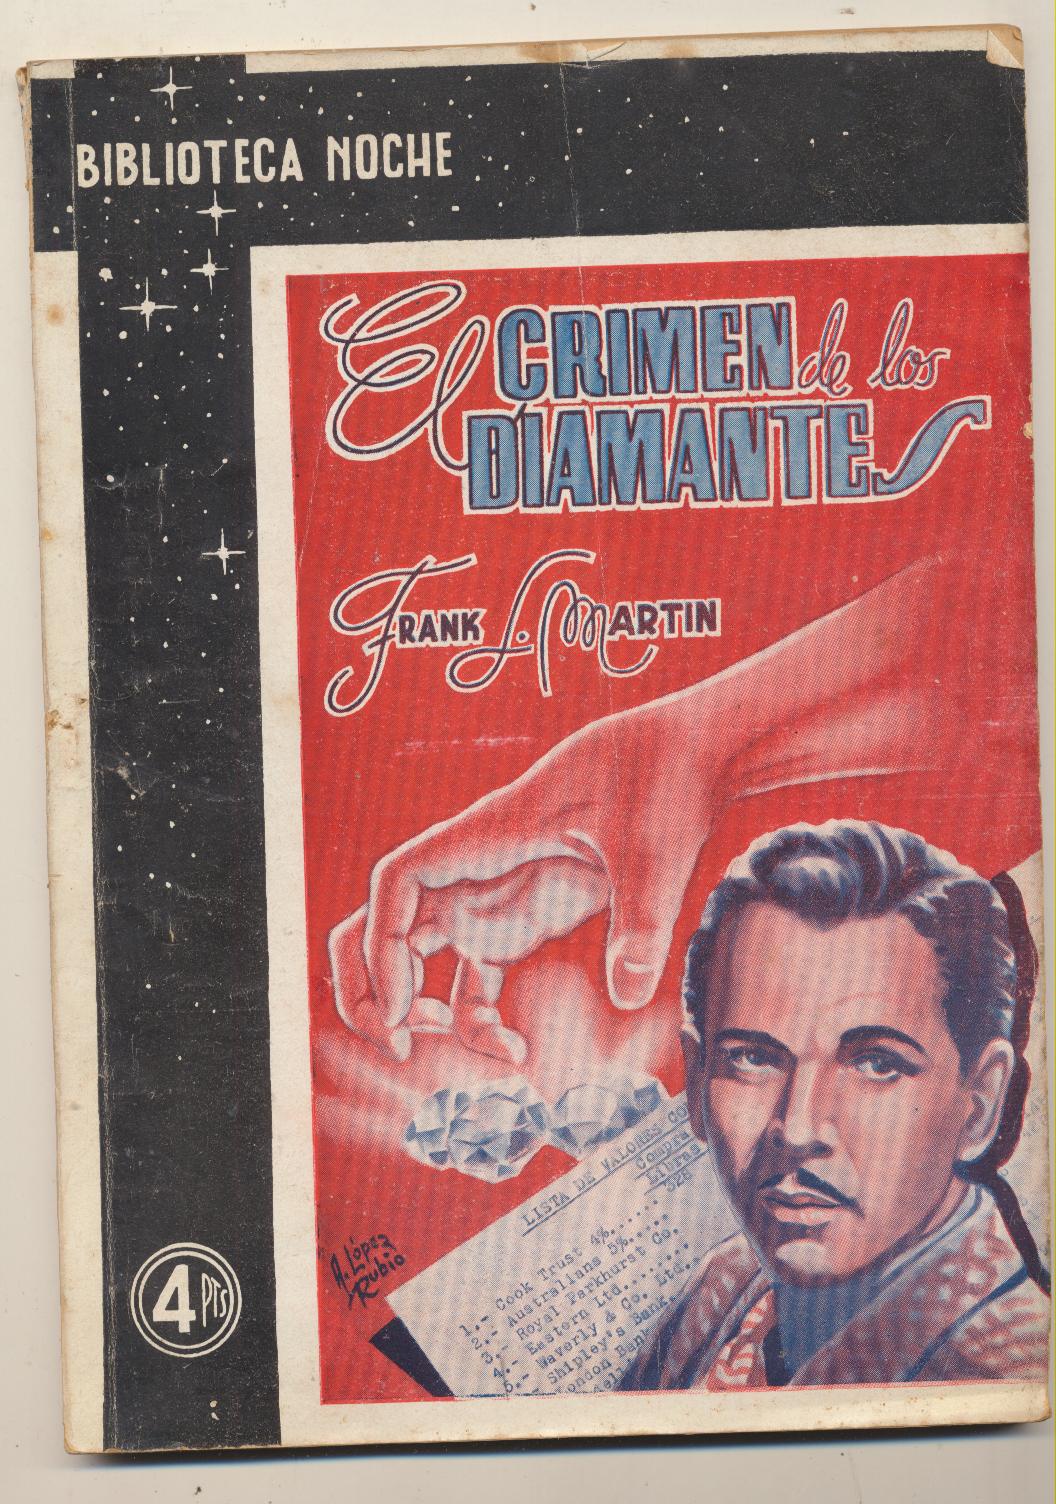 El Crimen de los Diamantes. F. L. Martin. Antares 194?